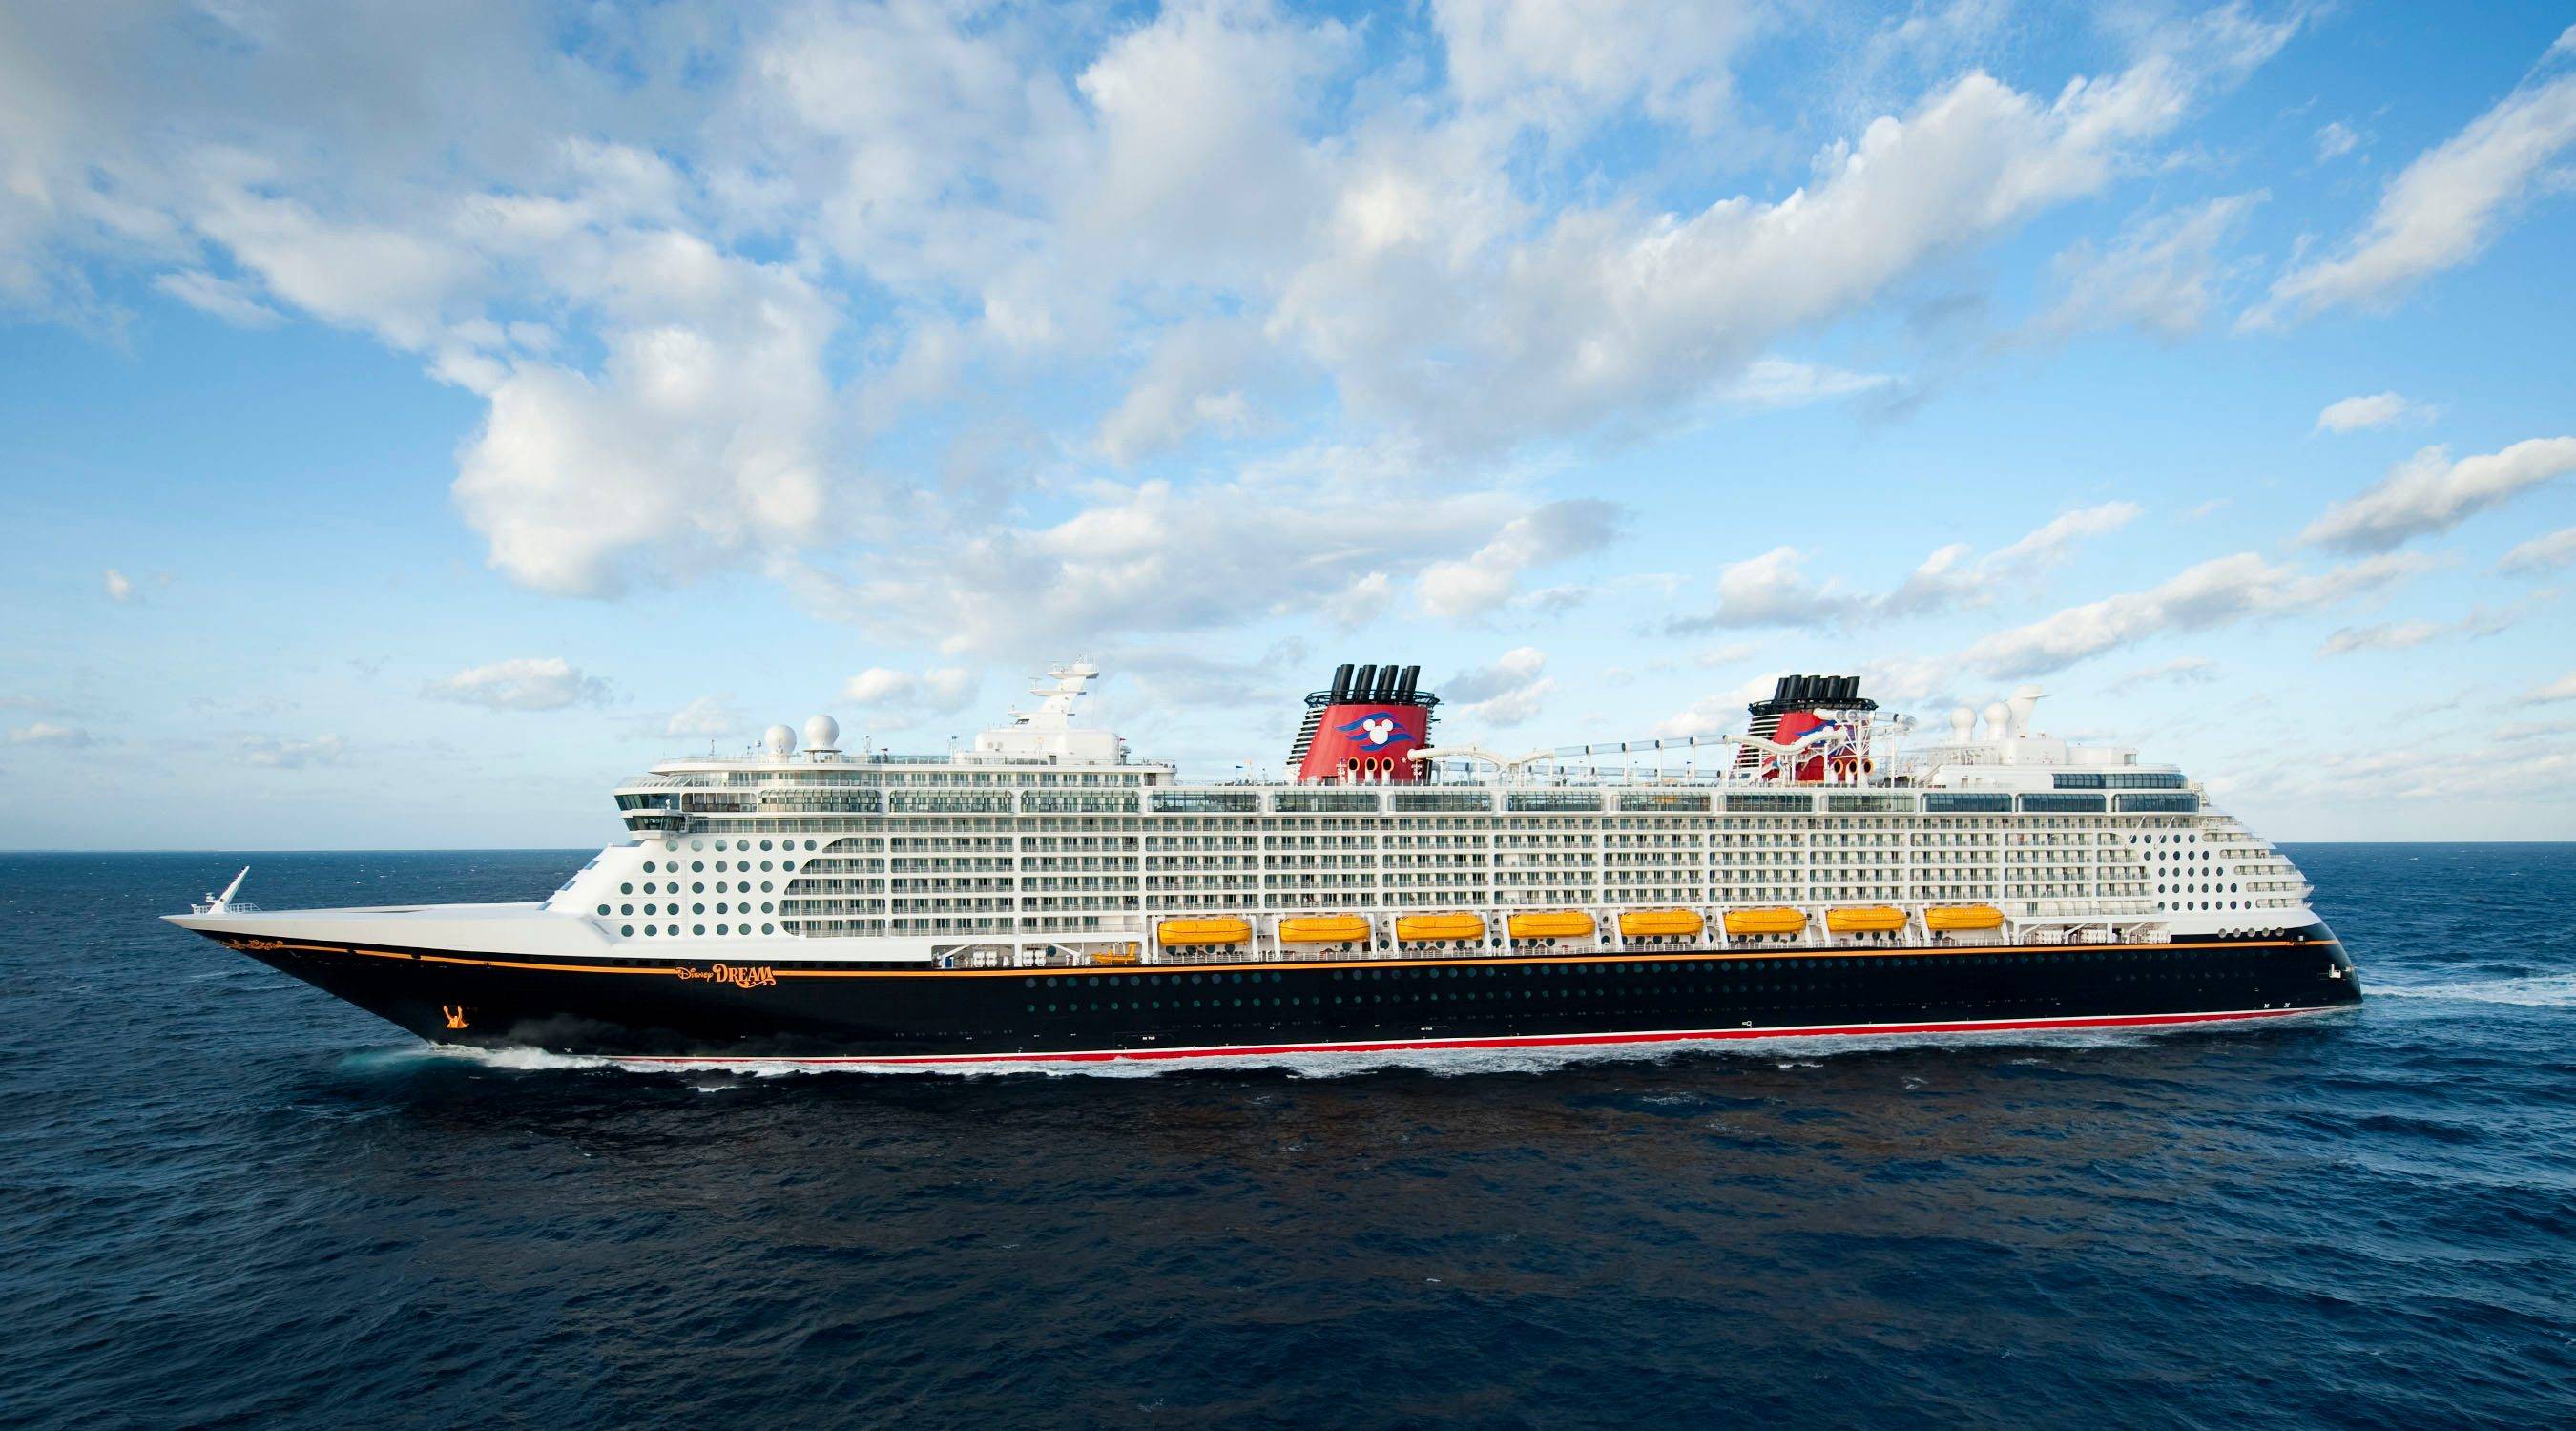 Disney Dream resumes cruises